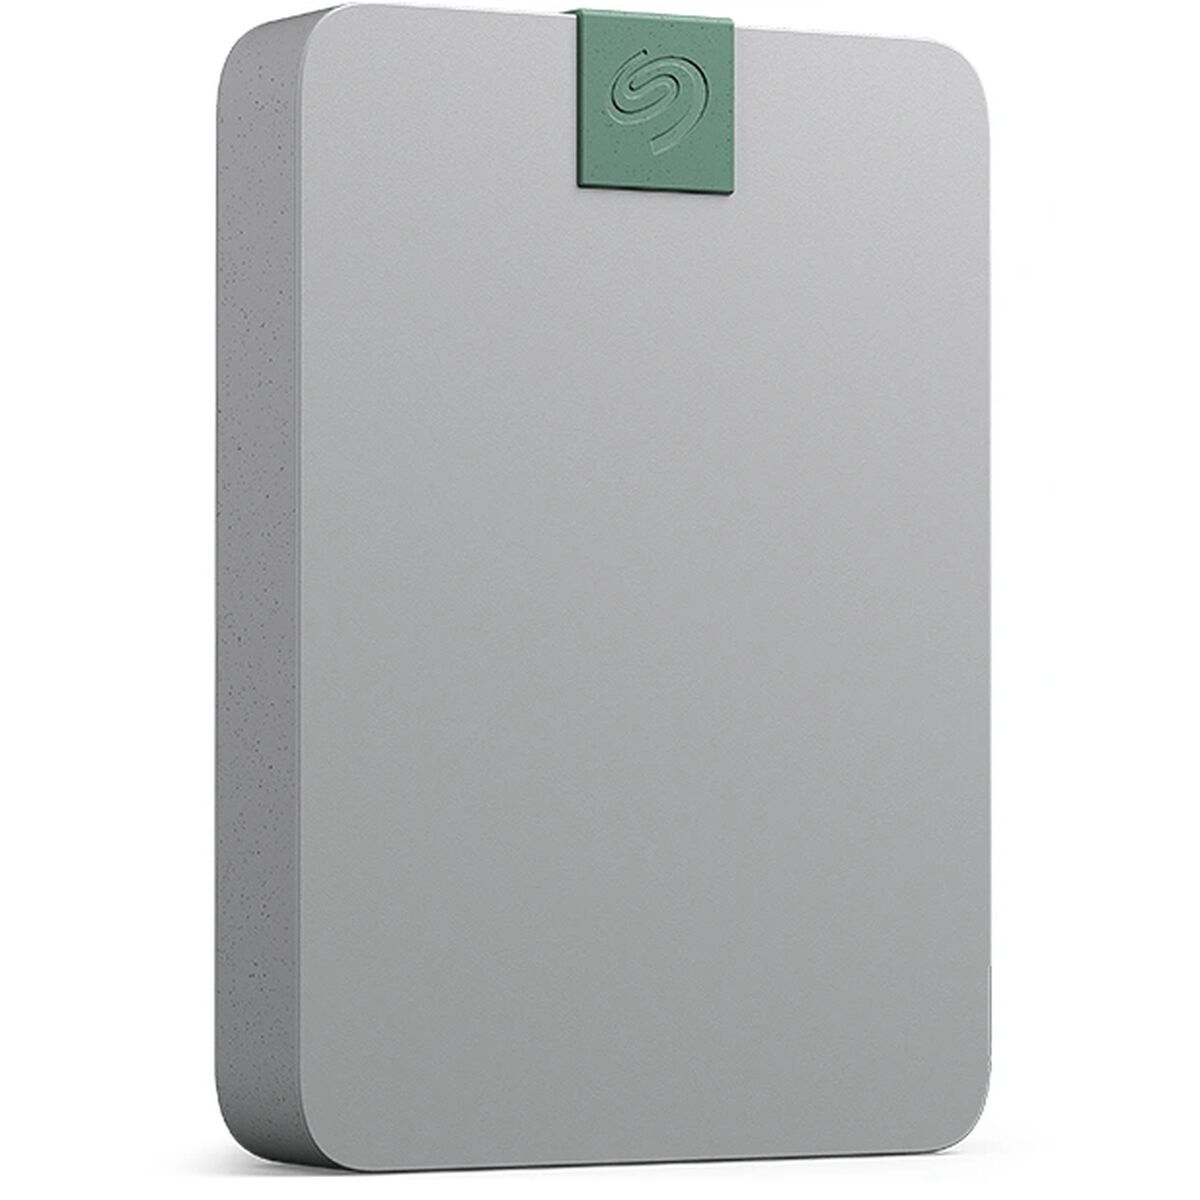 Hard Disk Esterno Seagate STMA2000400 2 TB SSD - Disponibile in 3-4 giorni lavorativi